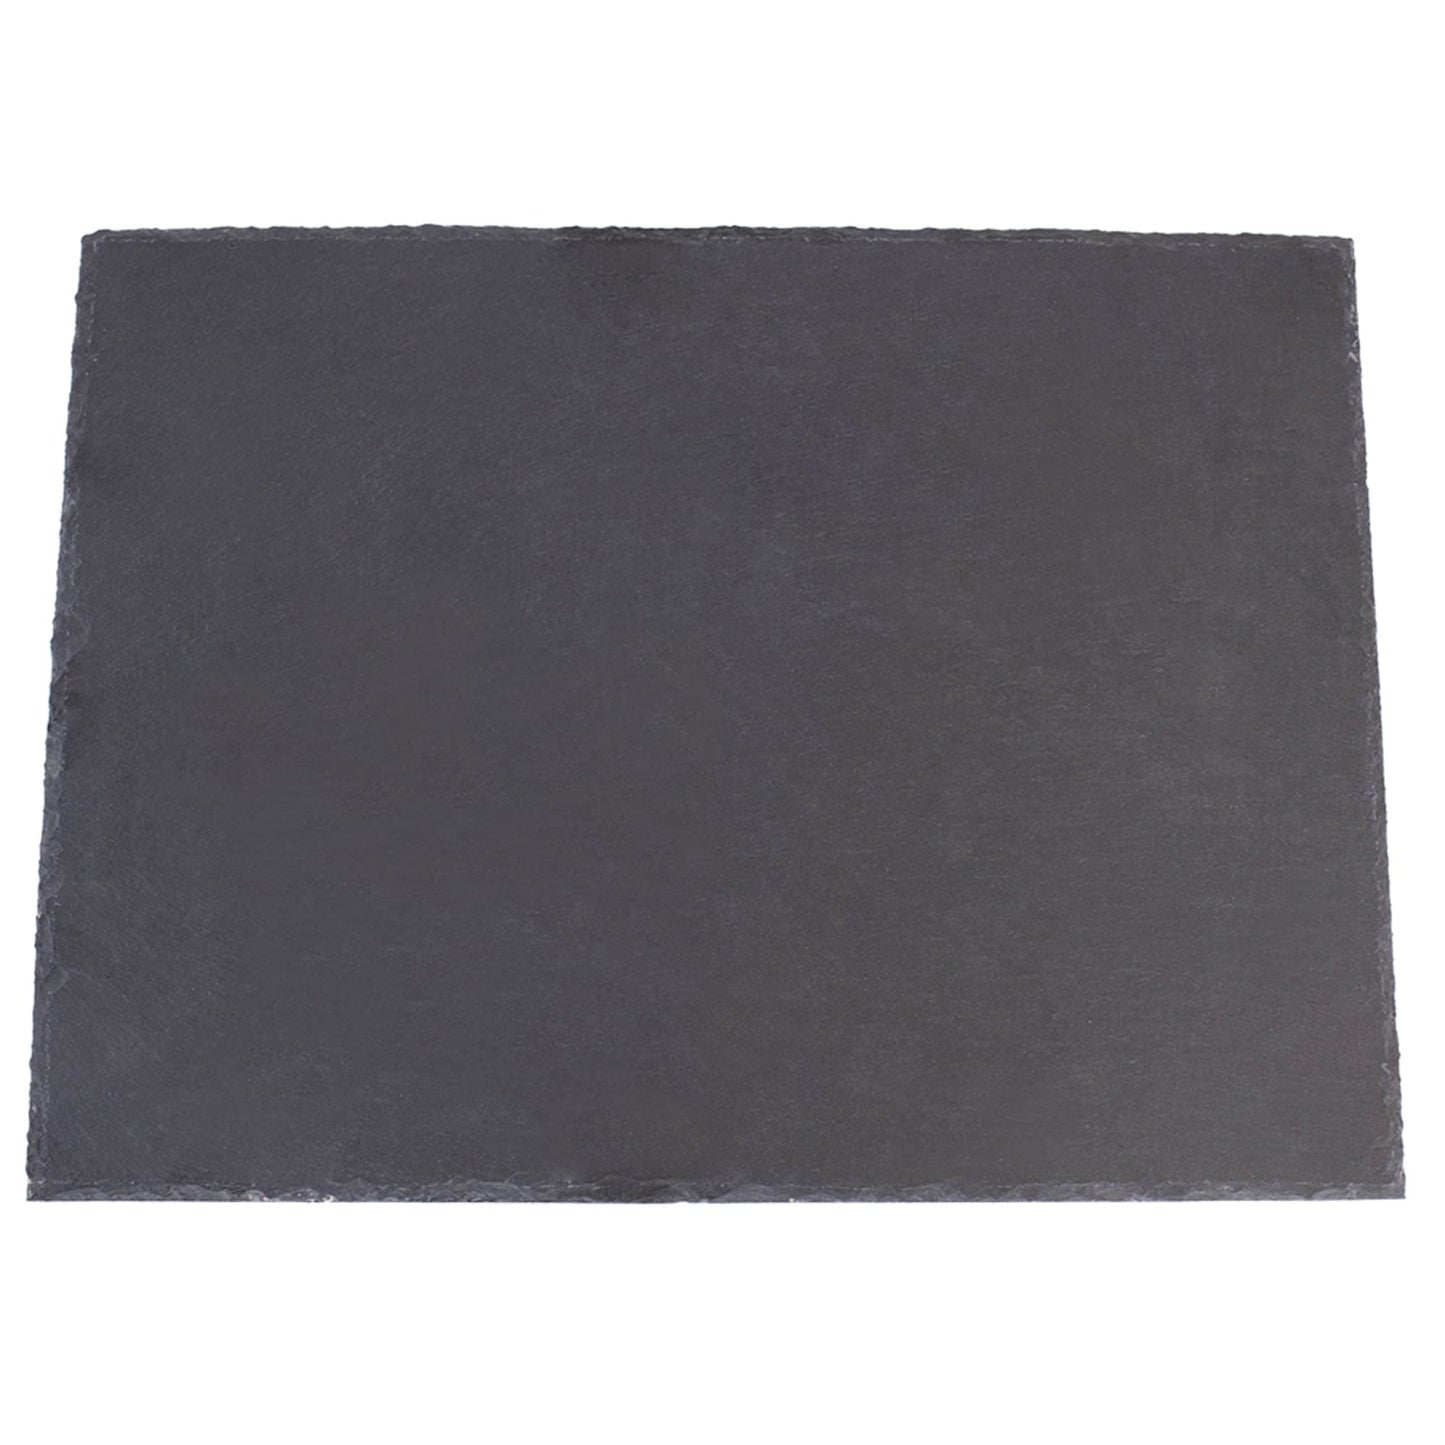 12x 16 Slate Cutting Board, Black